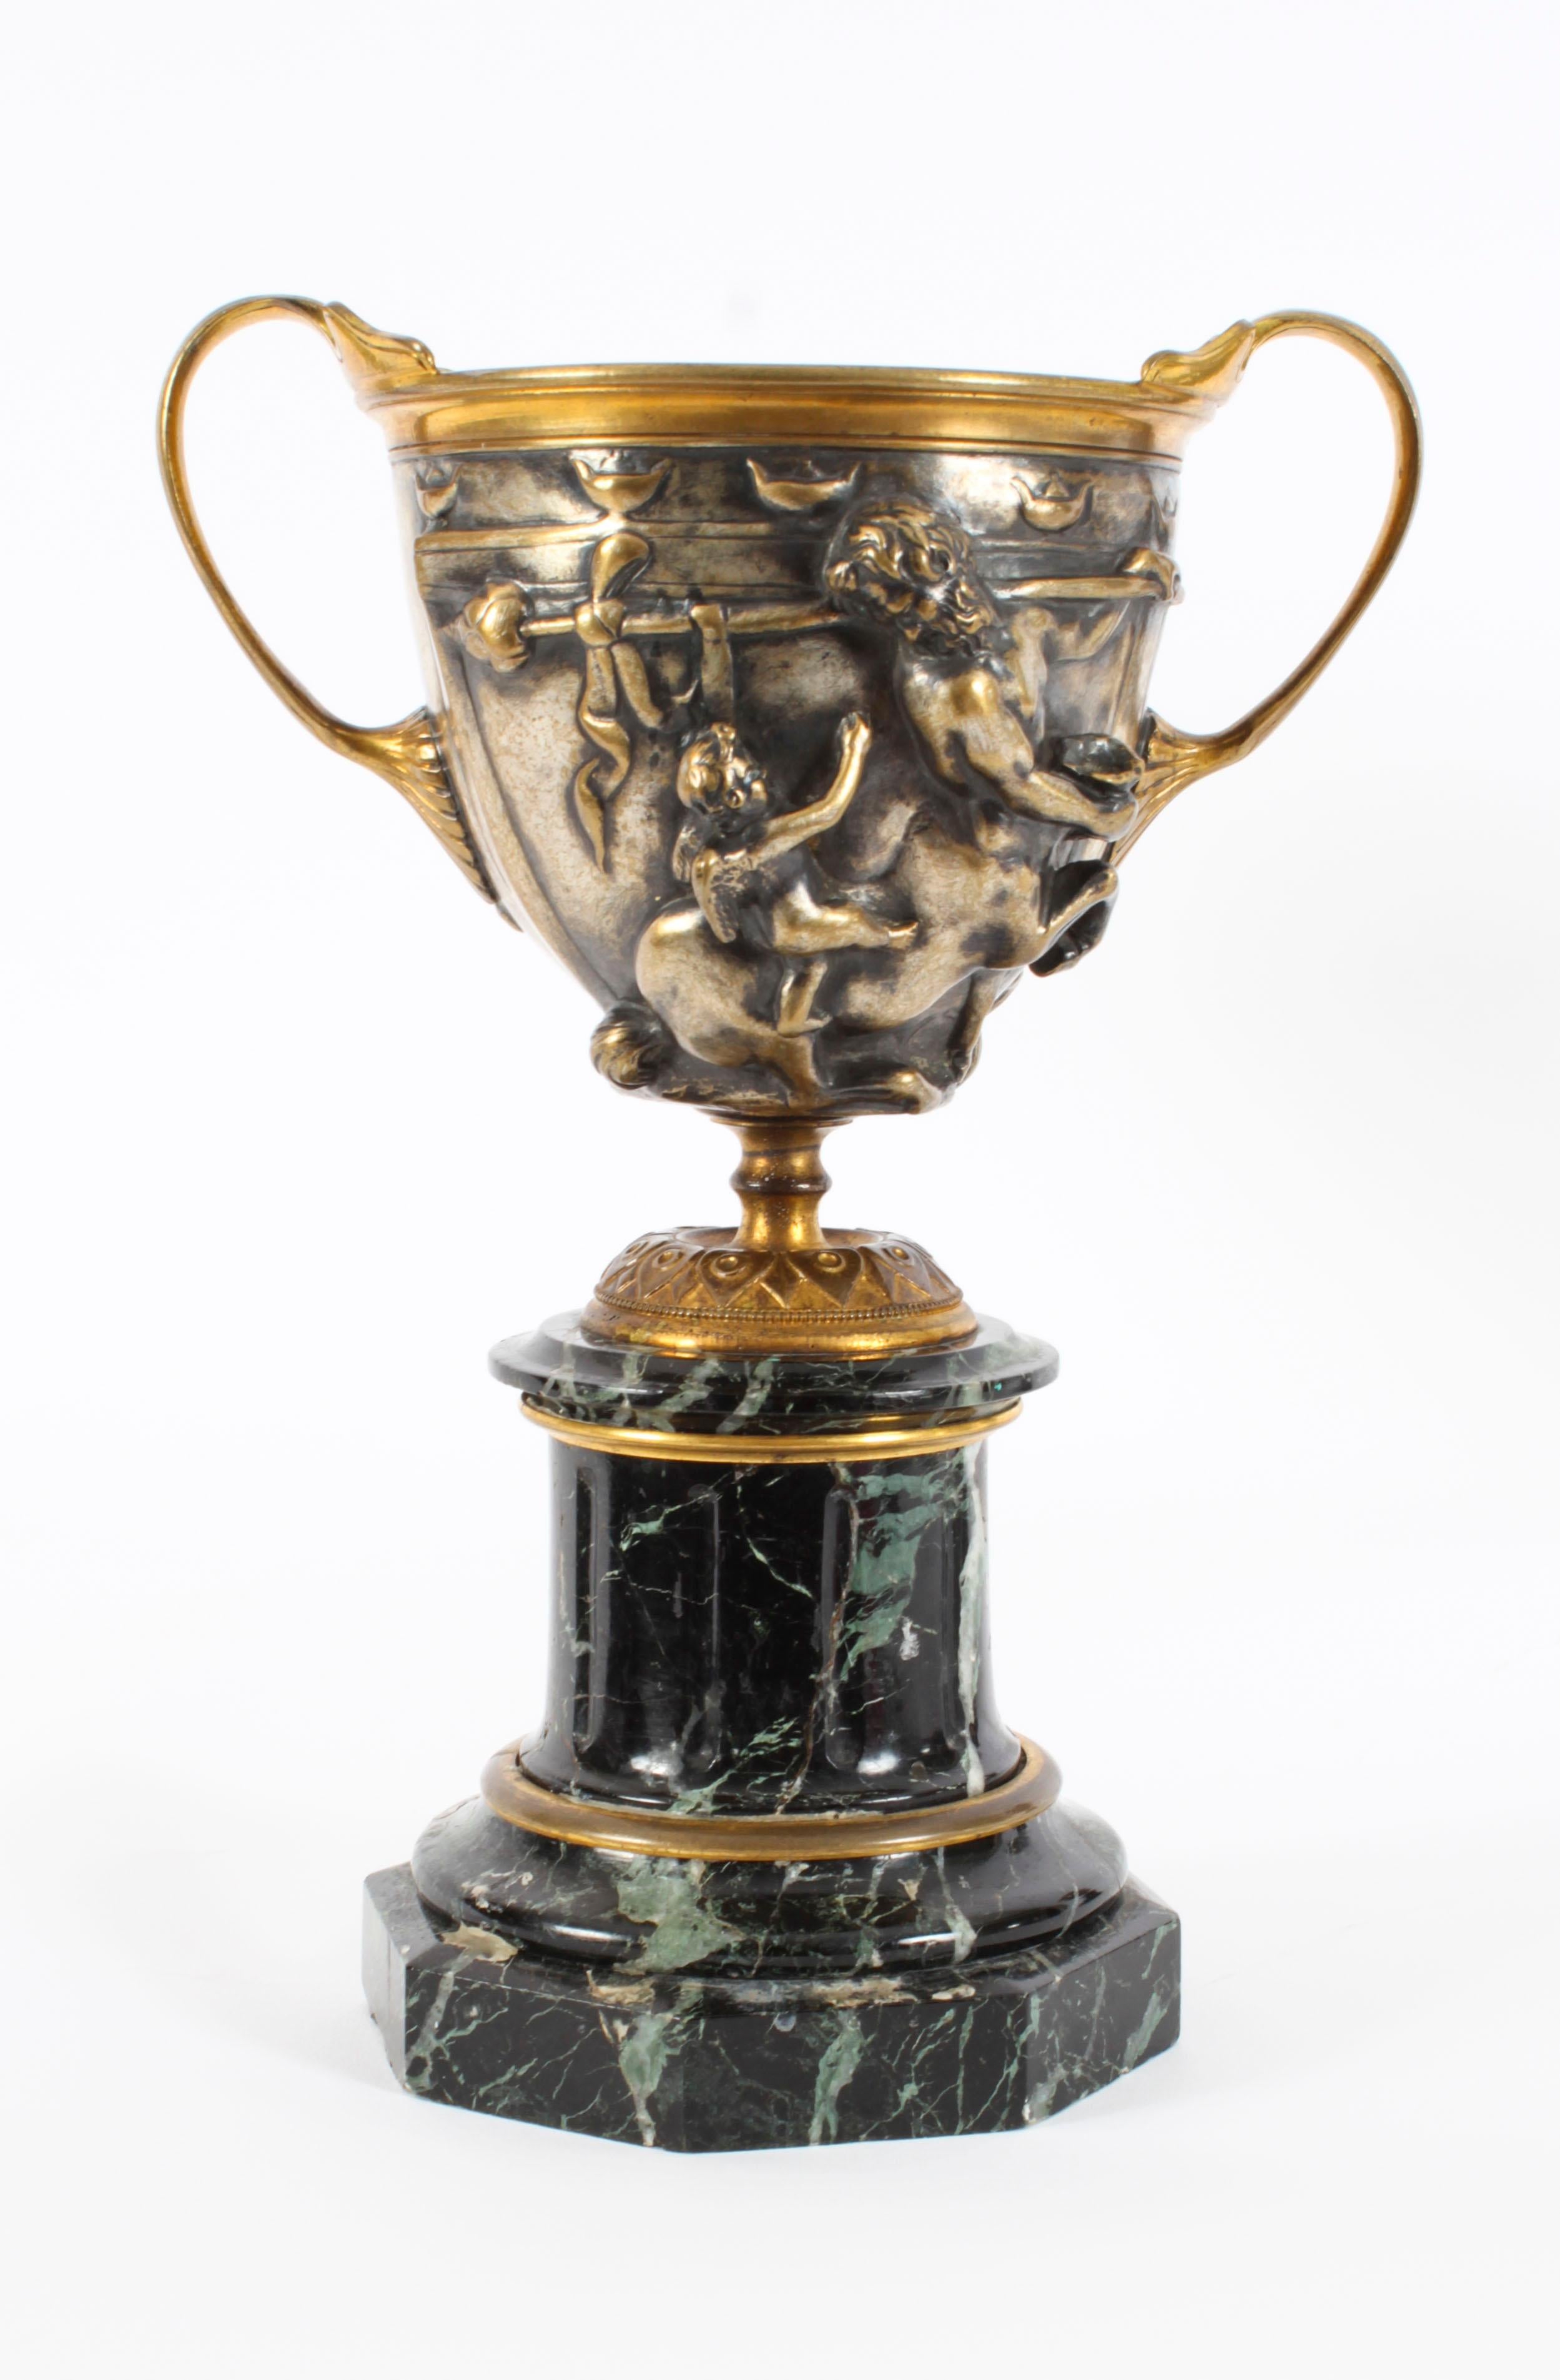 Il s'agit d'une remarquable paire d'urnes Grand Tour françaises anciennes en bronze argenté et marbre sur piédestal, datant d'environ 1860.

Ces superbes urnes ont été superbement moulées en haut-relief avec des centaures bacchanales et elles sont